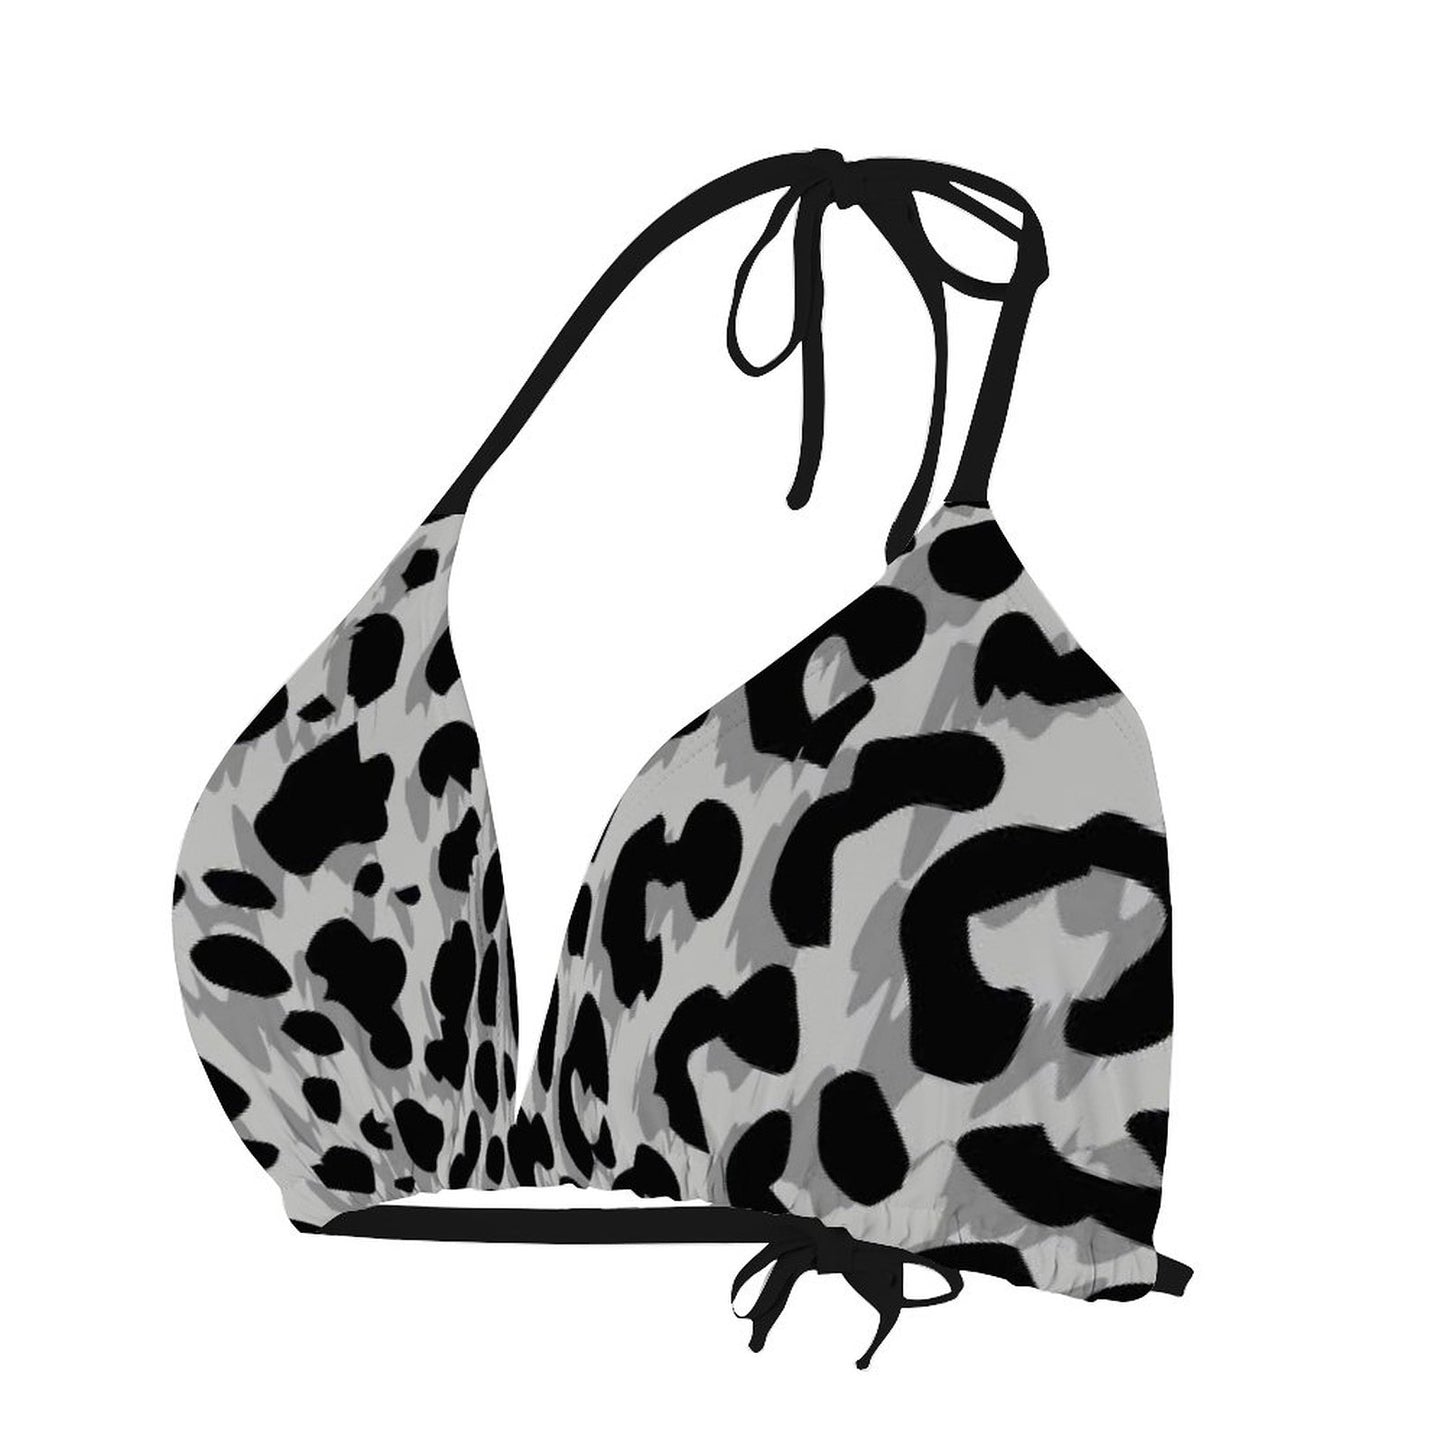 Online Customize Swimwear for Women Women's Sexy Swimwear Leopard Grain